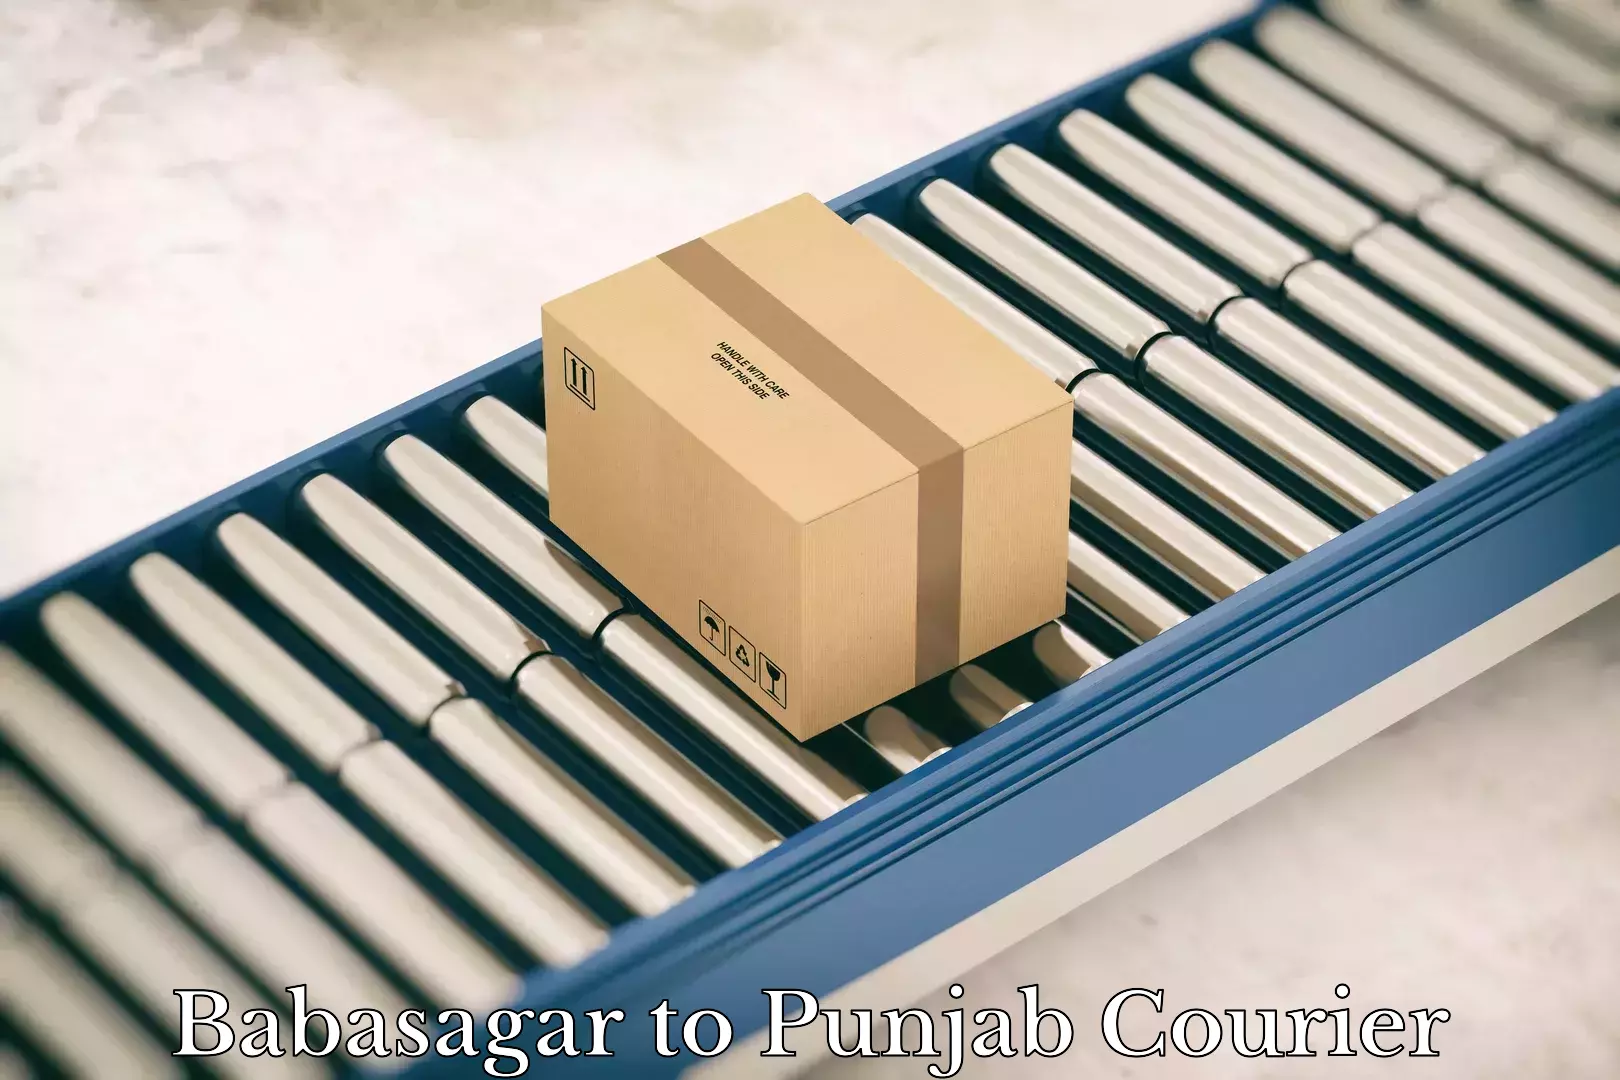 Regular parcel service Babasagar to Punjab